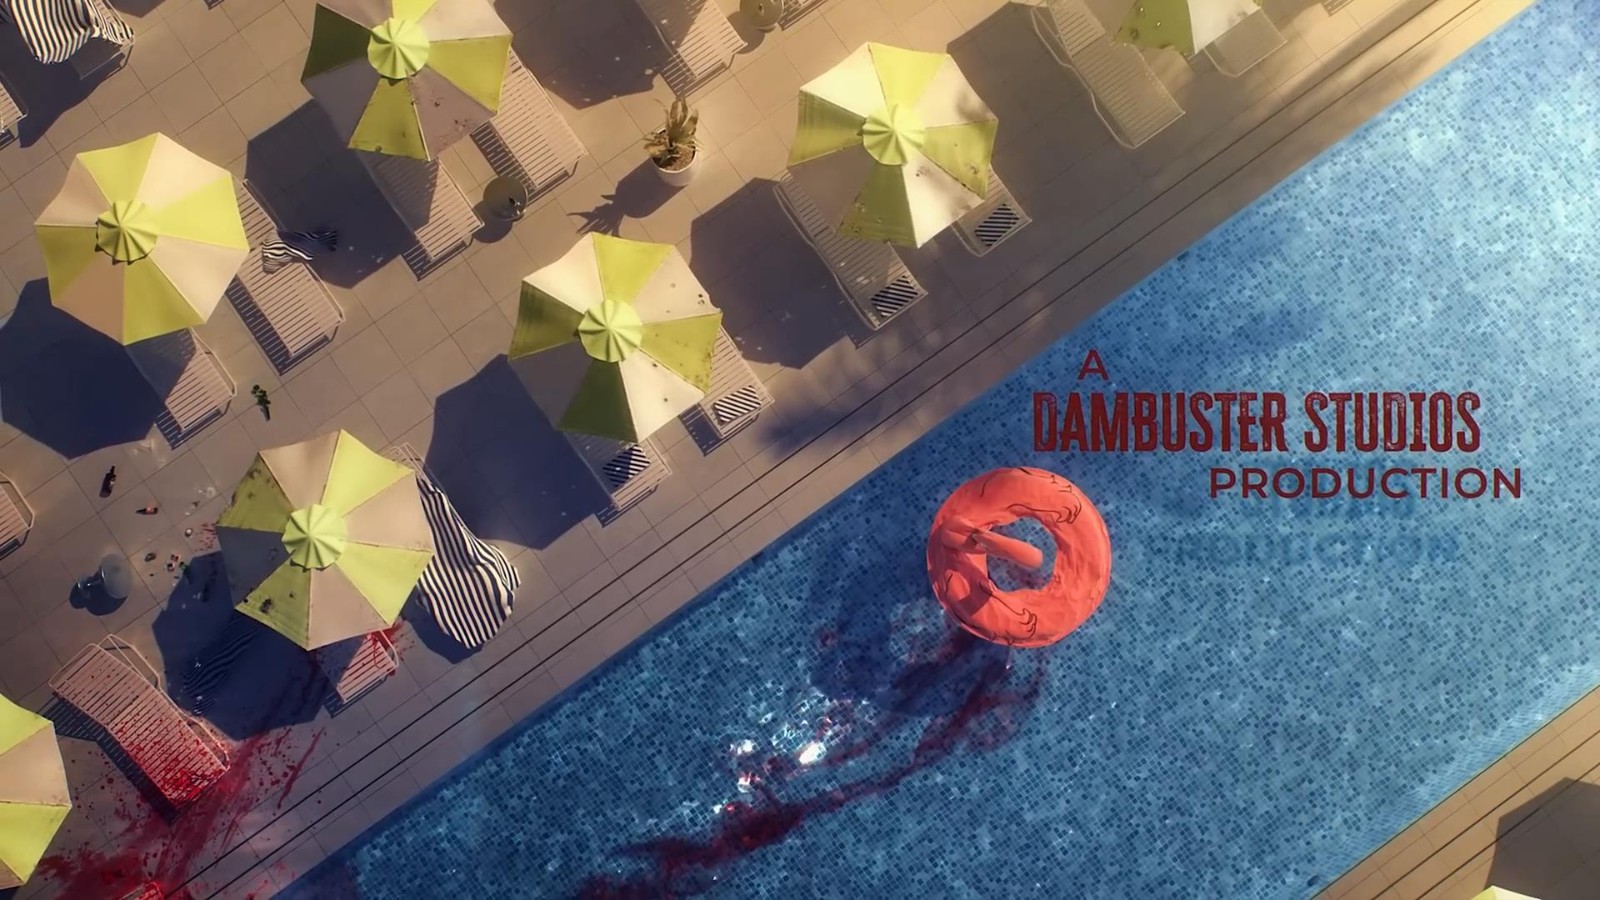 《死亡島2》遊戲開篇CG動畫 毫無生機的洛杉磯